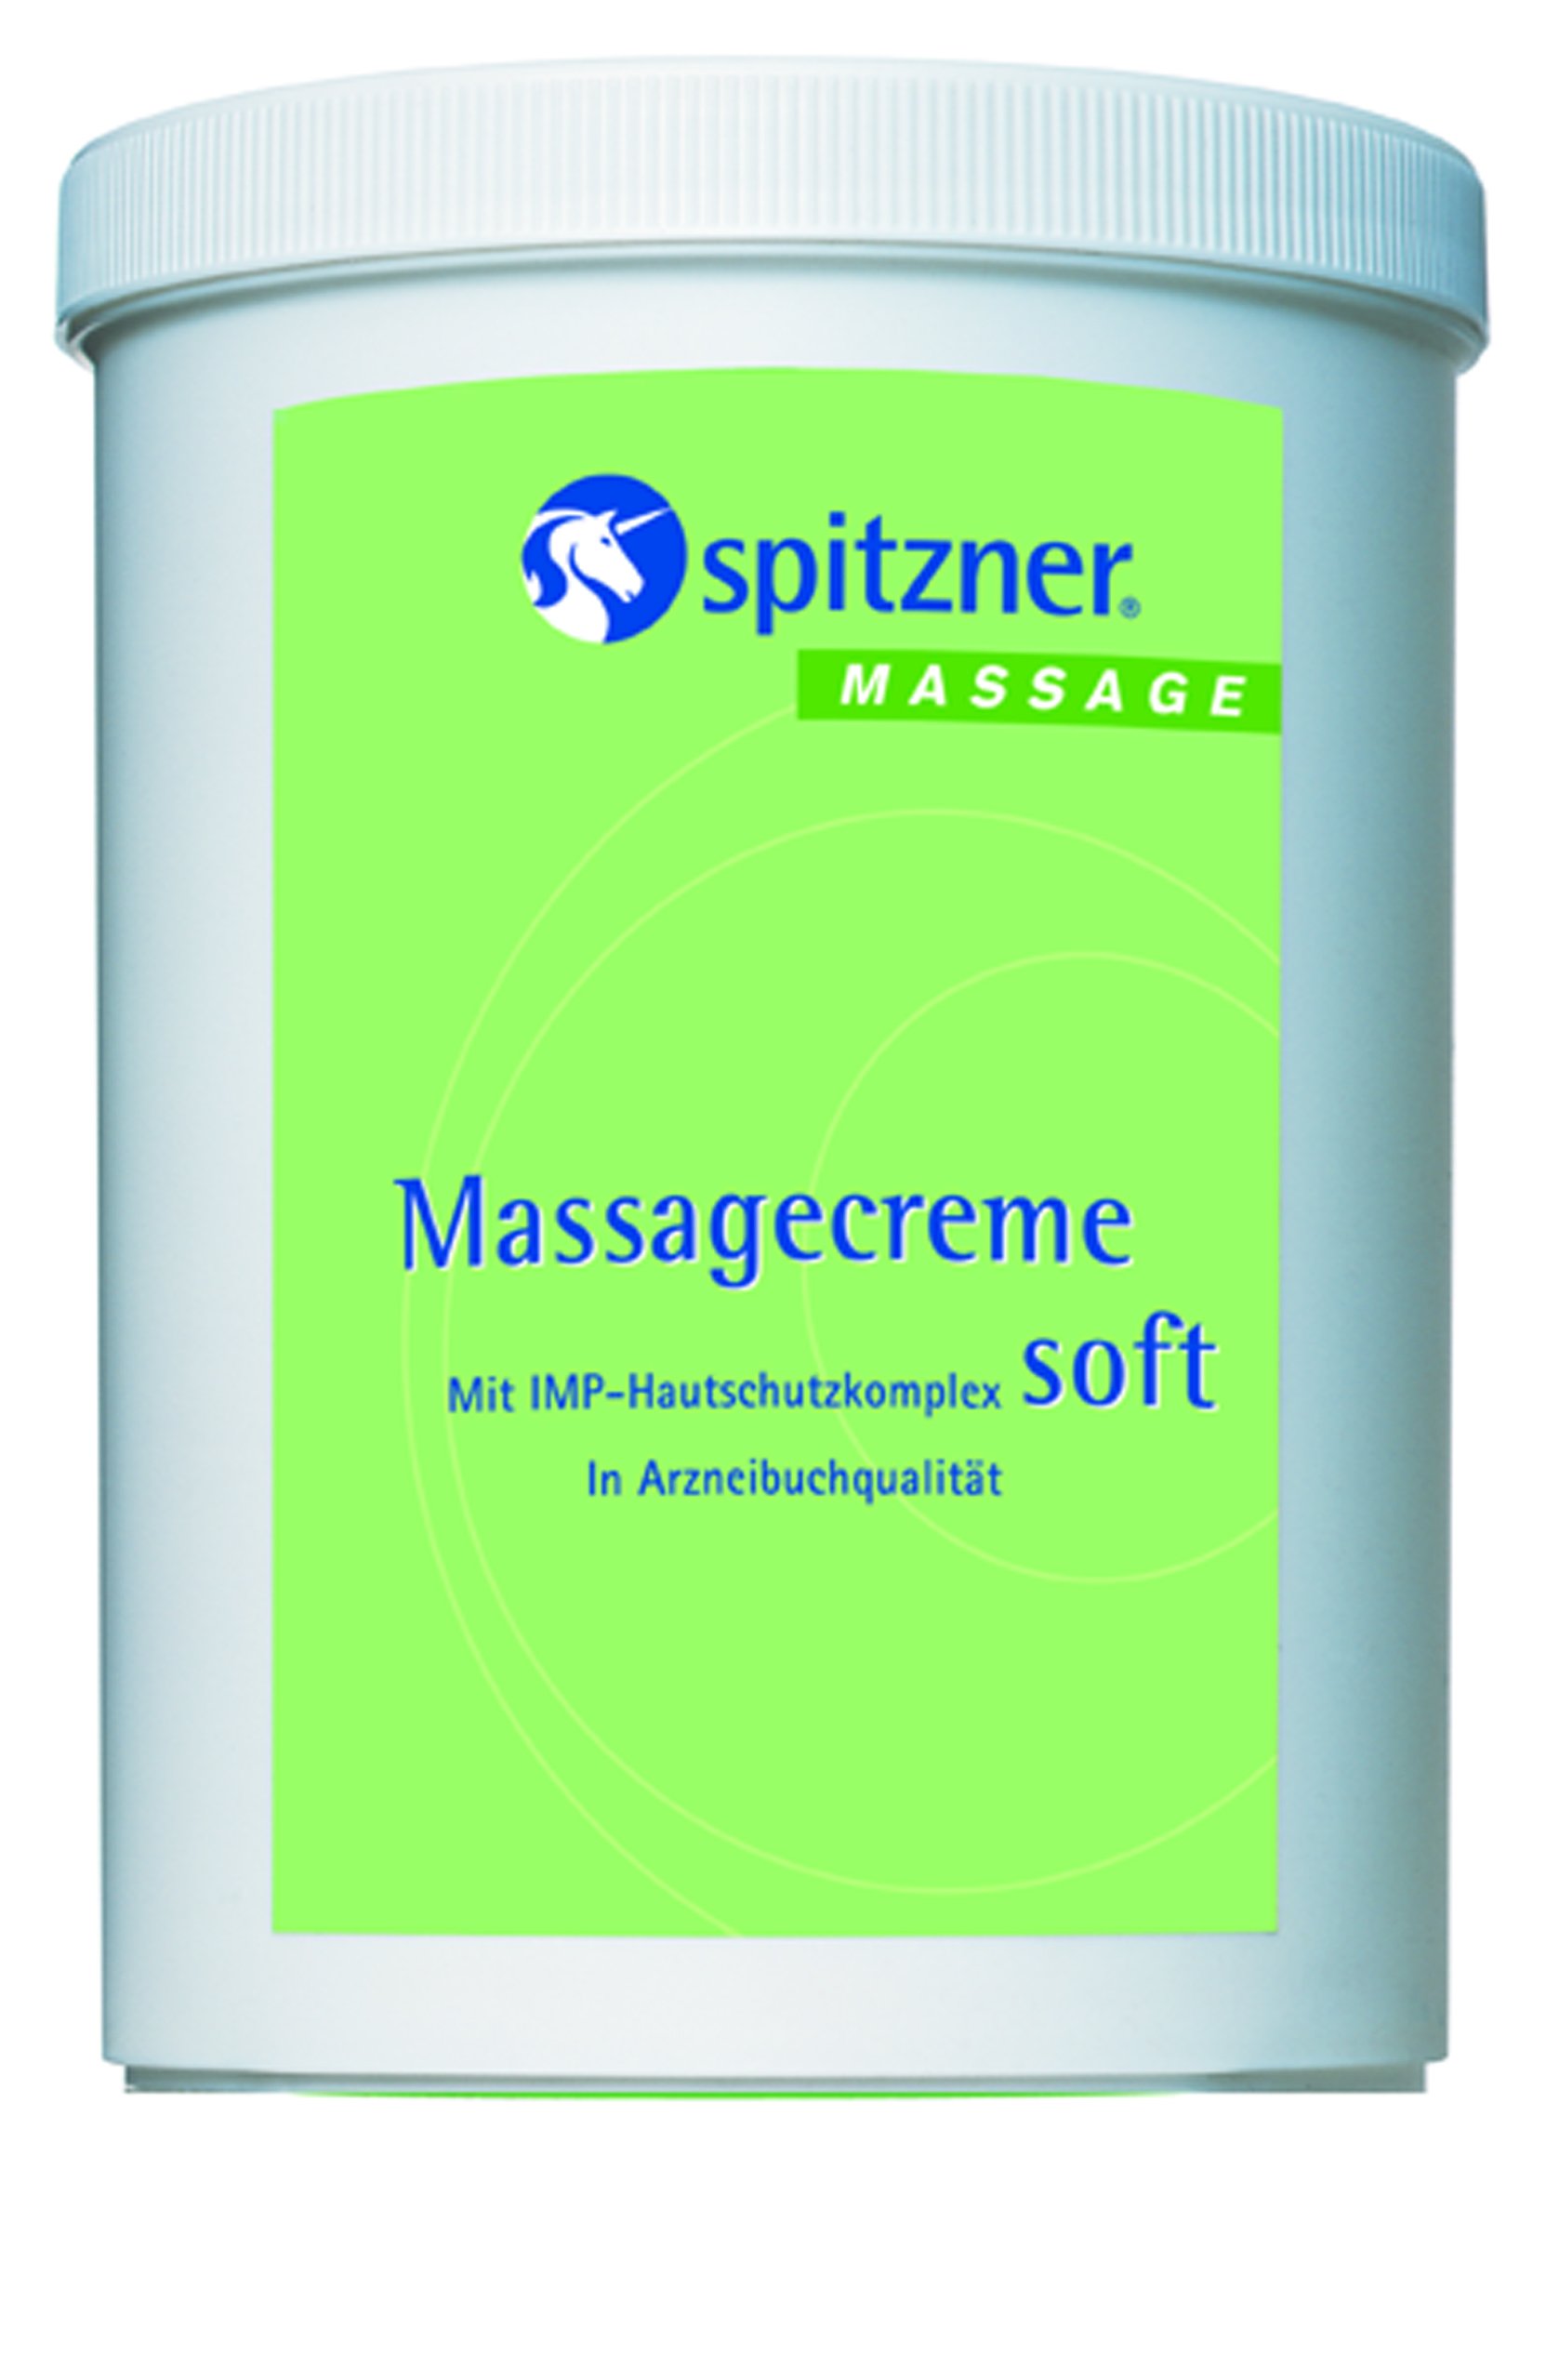 Massagecreme “Soft“ (1 x 1000 ml) von Spitzner